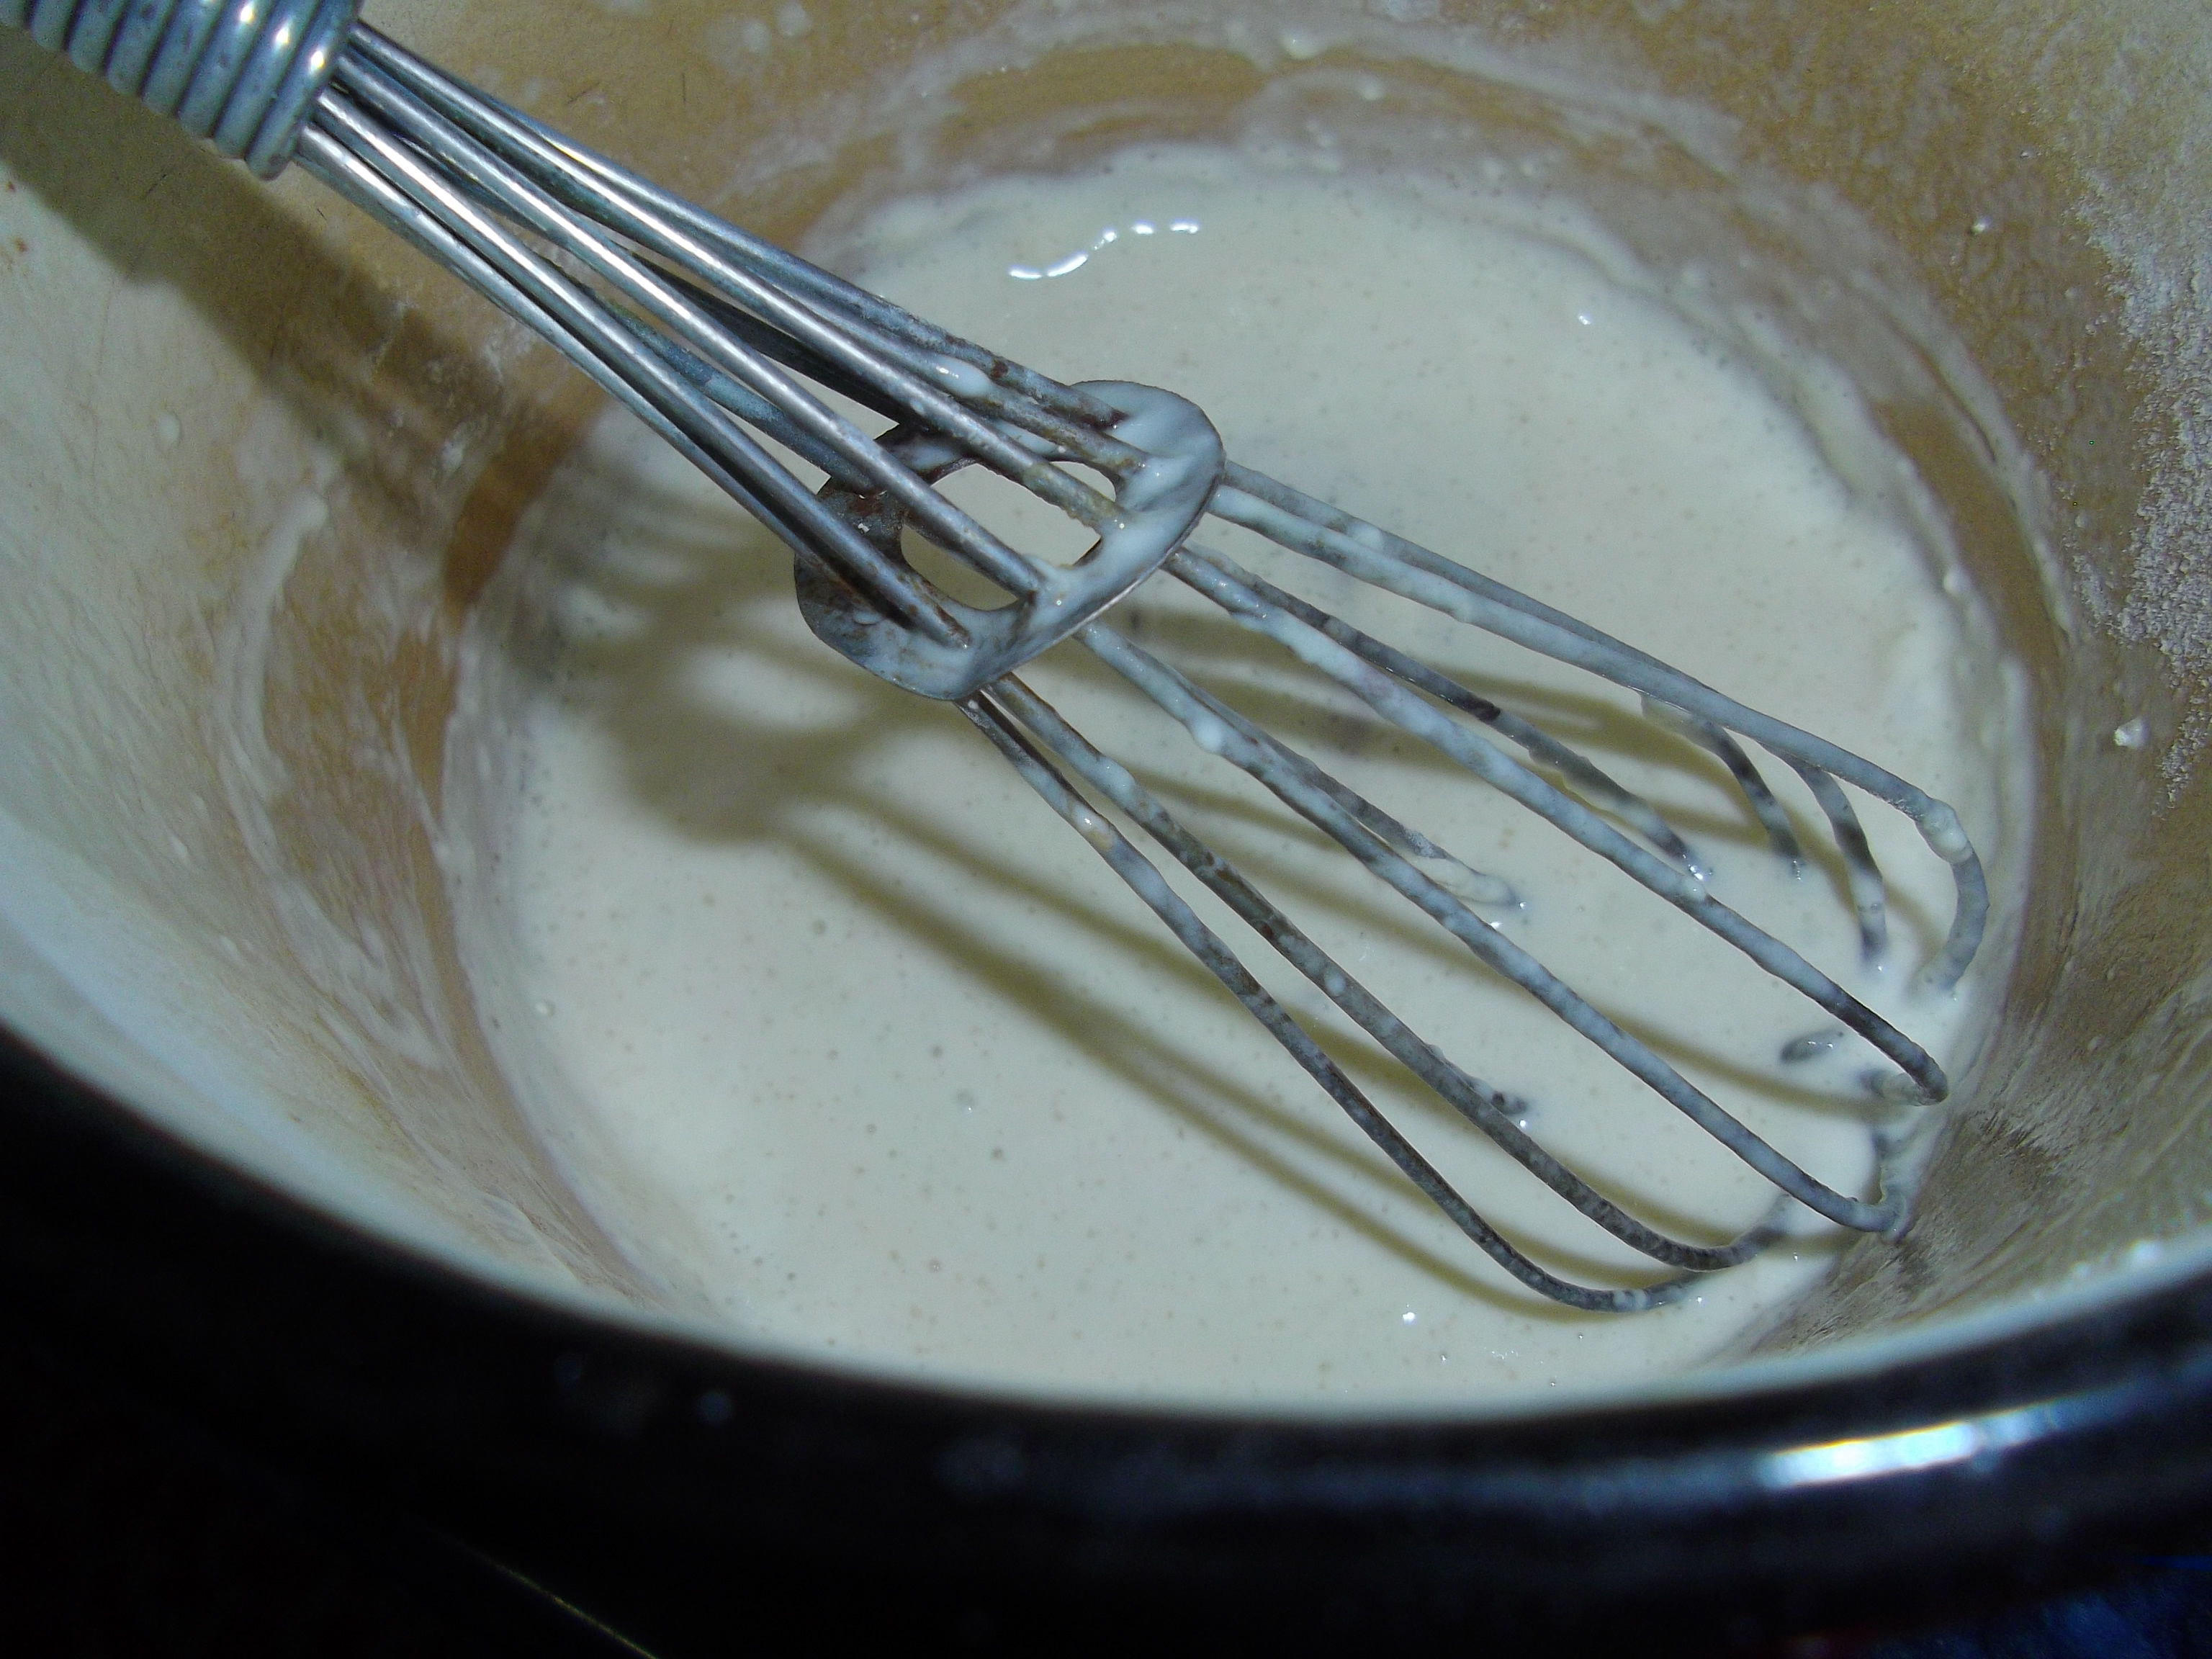 Clatite cu iaurt